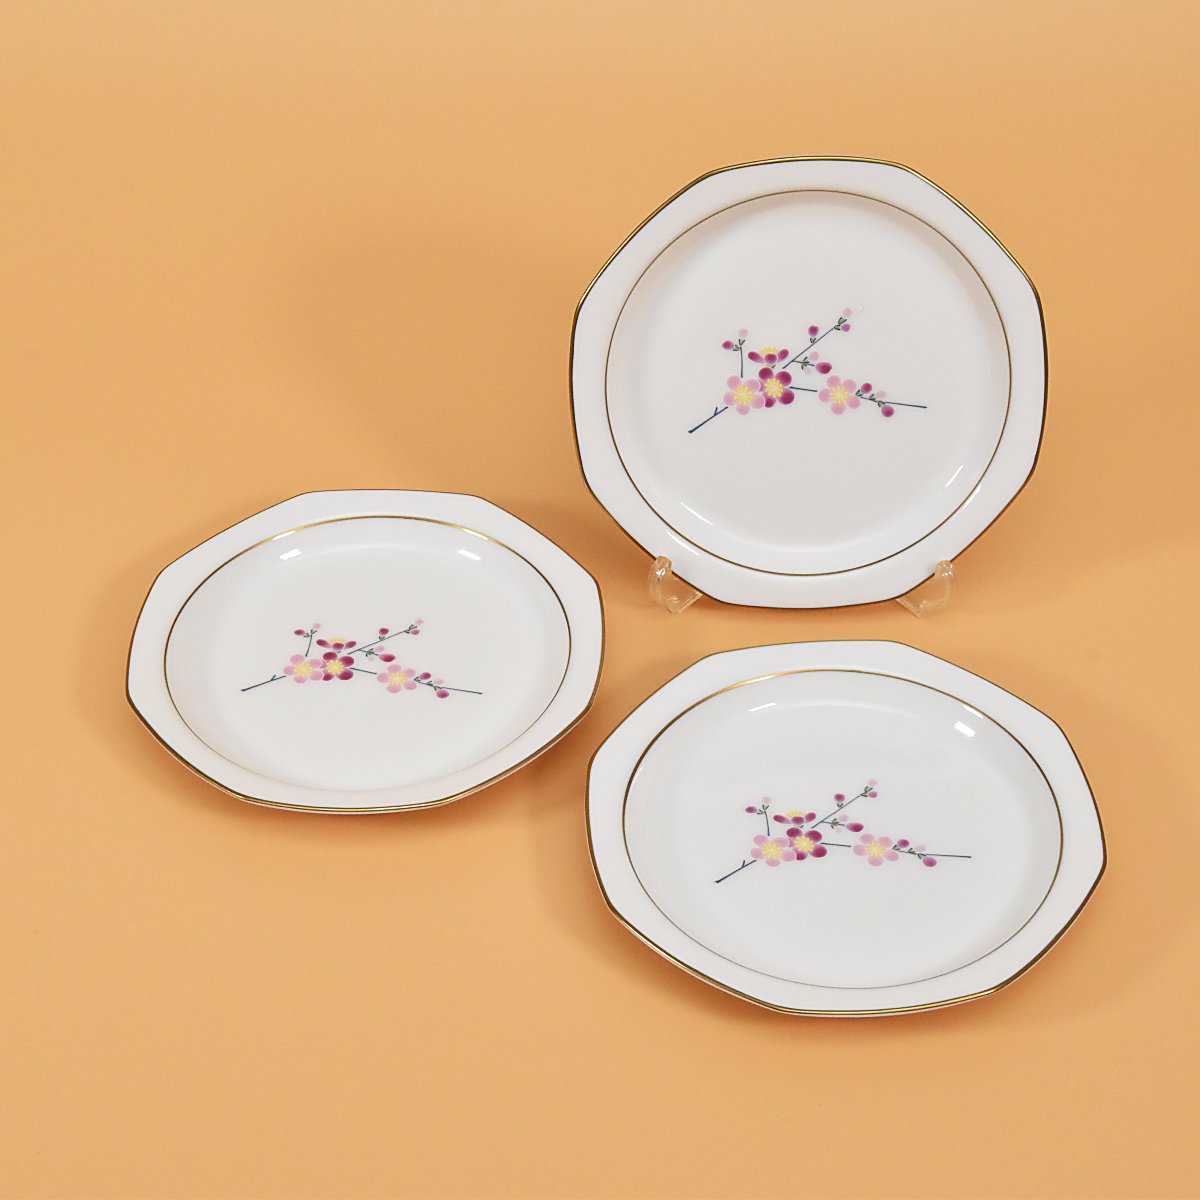 可愛らしいピンクの梅の花がデザインされた中皿3枚セットです。径が約17cm 高さが約2cm 3枚重ねた時の高さが約4cmになります。お皿の縁は約1.5センチくらいのリムの部分があり手に取りやすくおしゃれな形状になっています。取皿にちょうど良い位のお皿です。電子レンジはお使いいただけません。